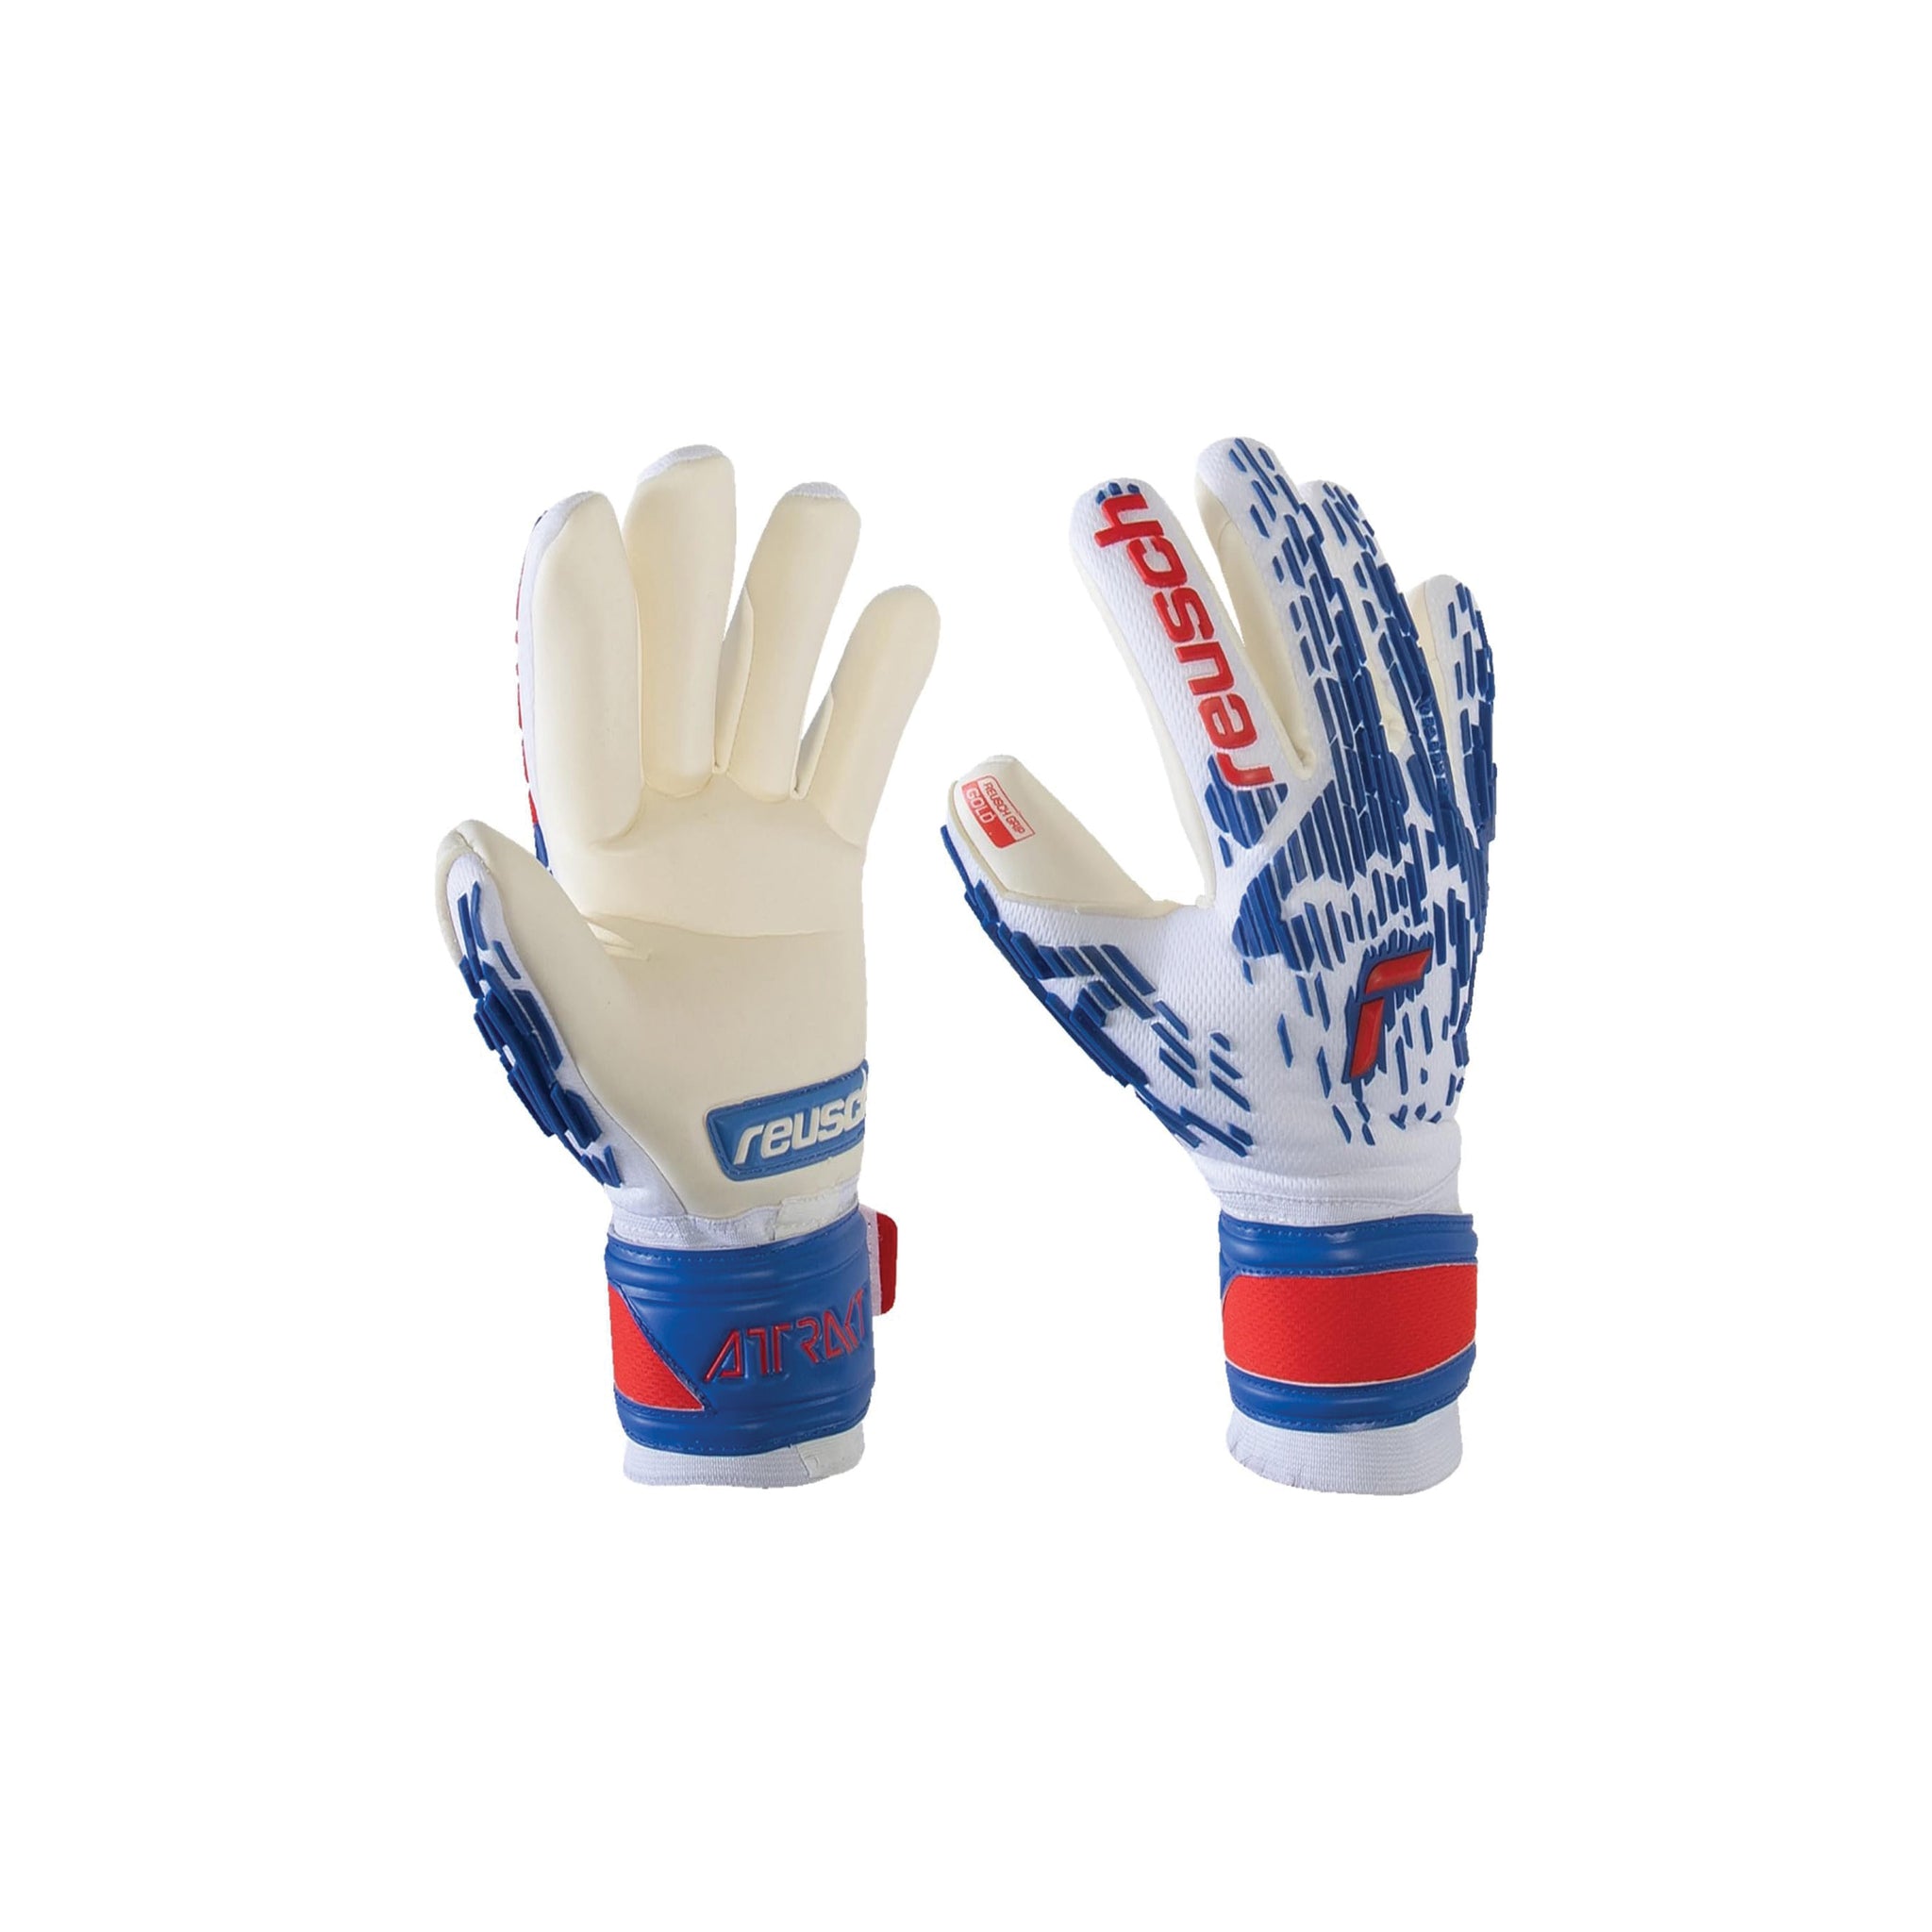 REUSCH Attrakt Freegel Gold Sleek Finger Support Gloves